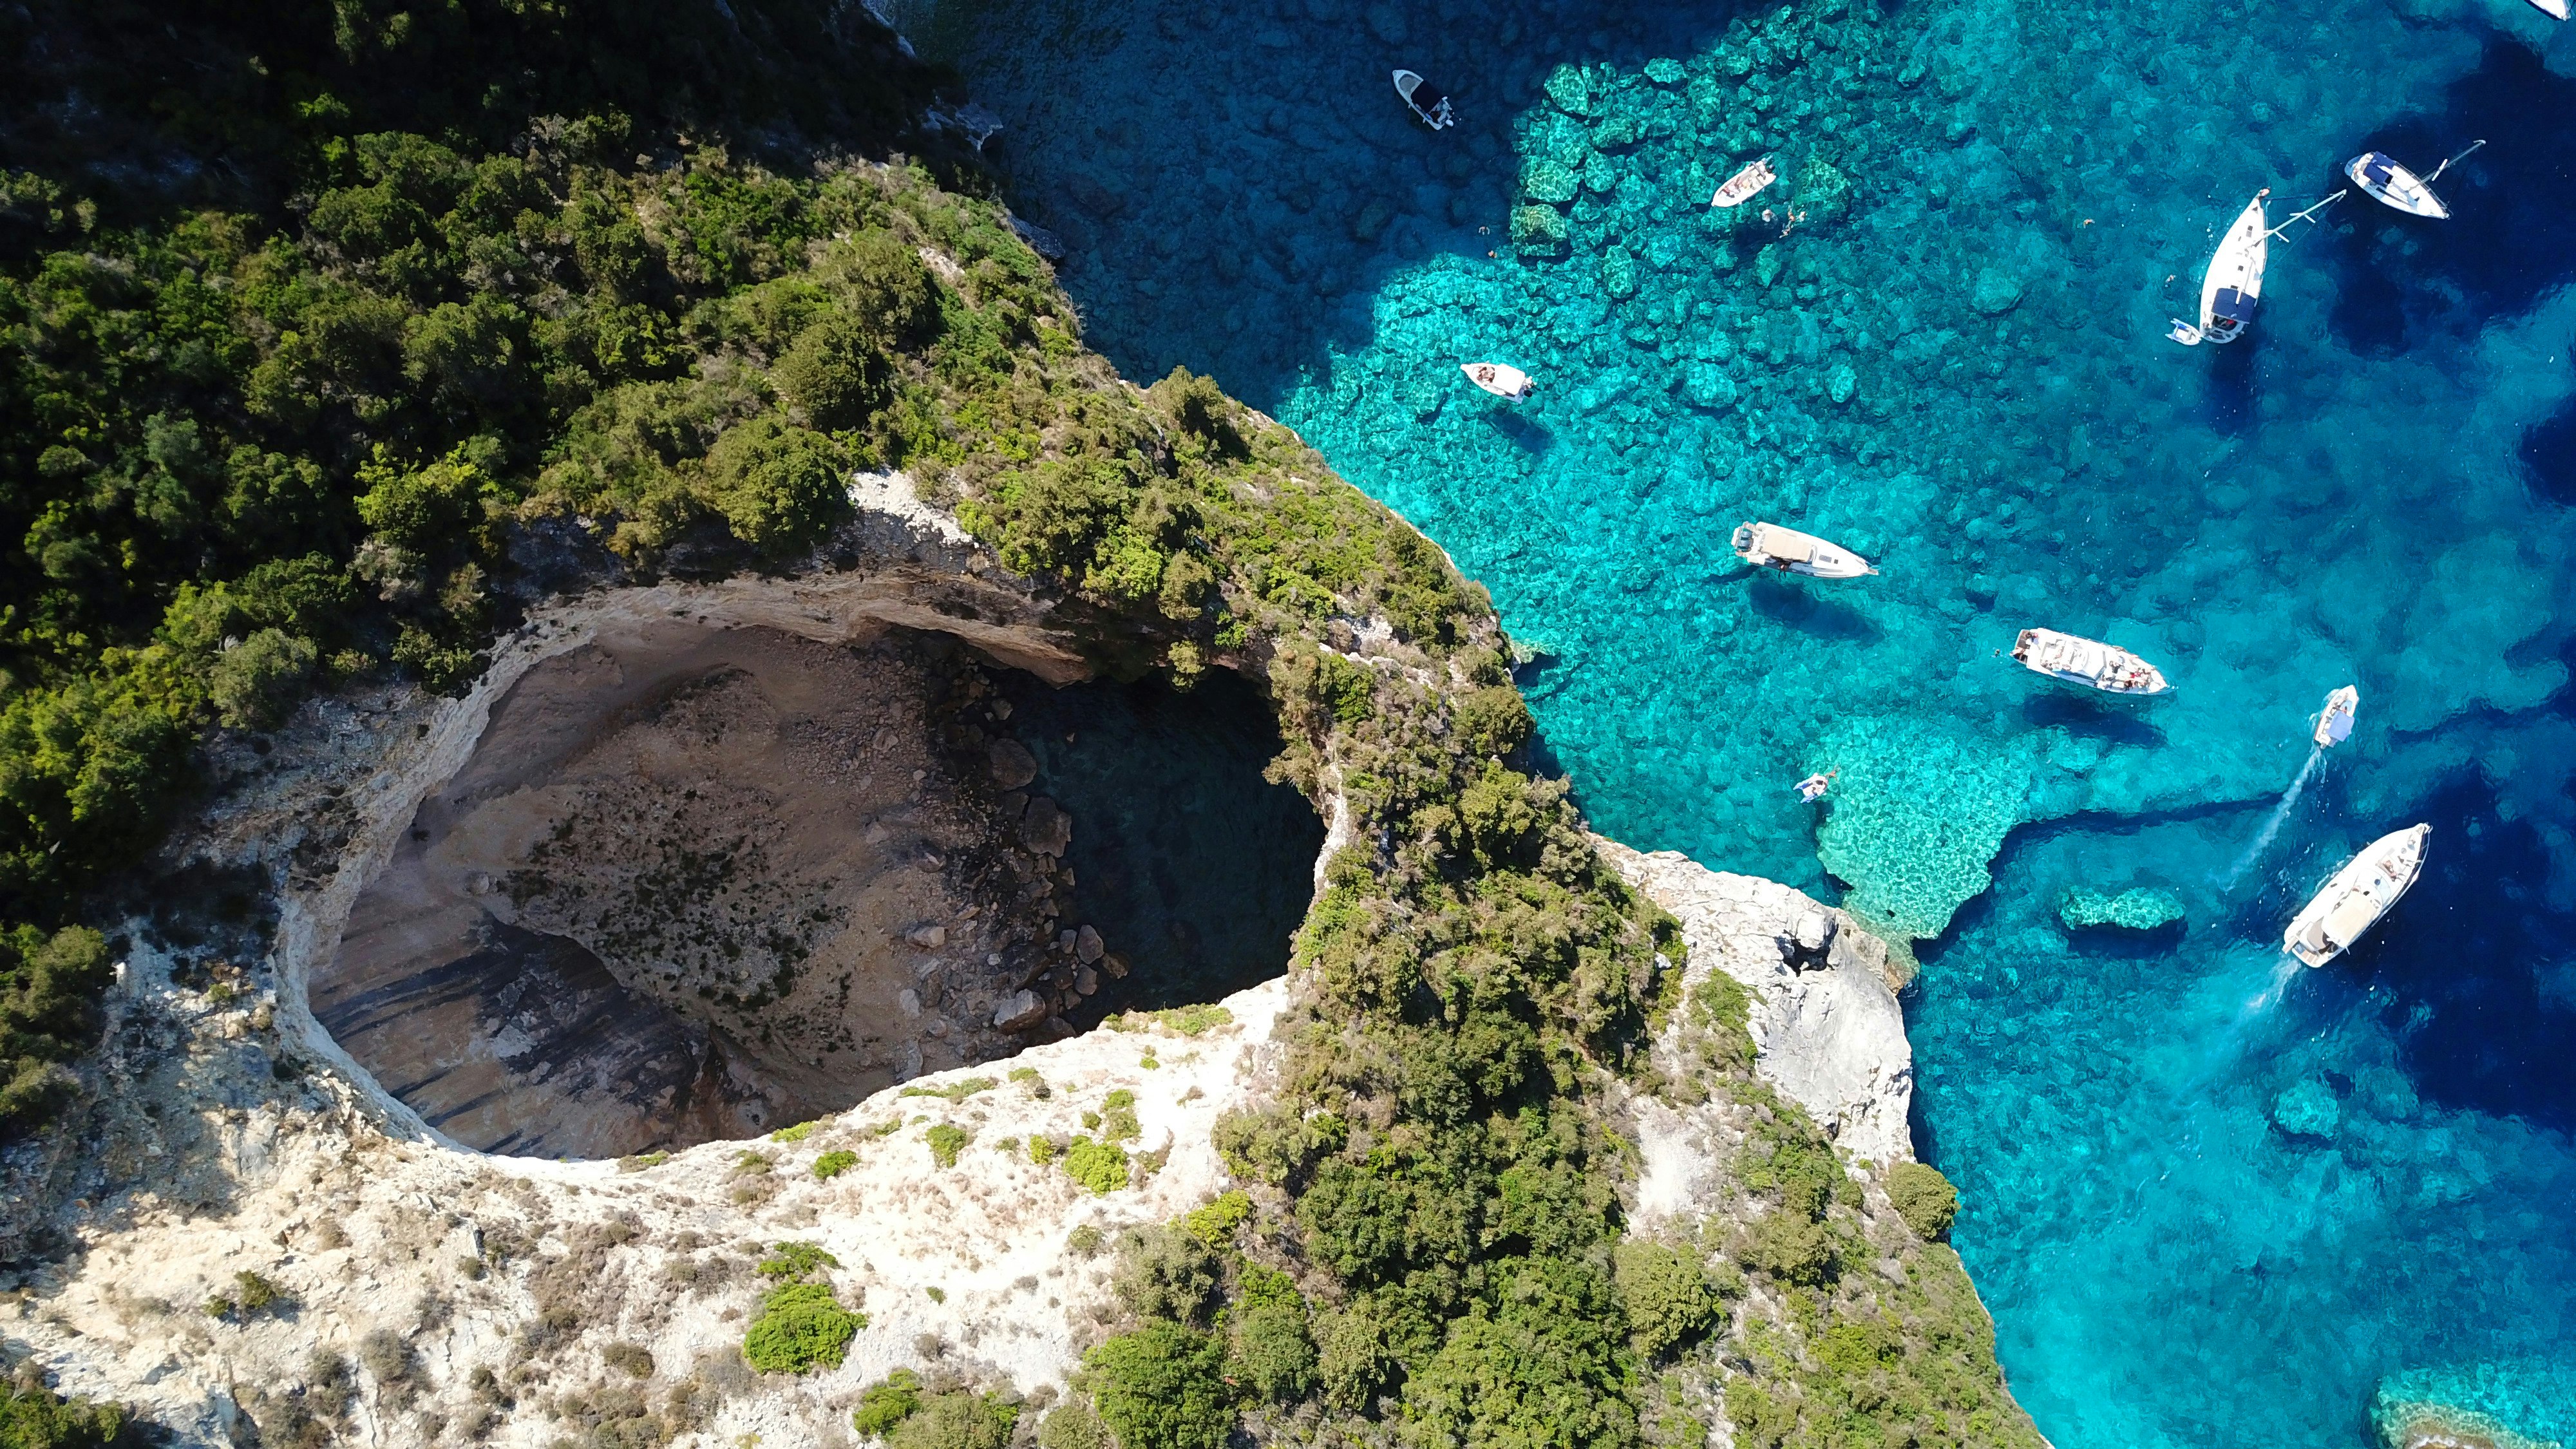 Immaginatevi su uno yacht, alla deriva sulle serene acque azzurre del Mar Ionio, dove le isole incontaminate di Paxos e Antipaxos emergono come gioielli di bellezza incontaminata e fascino tranquillo. State per salpare verso il paradiso.